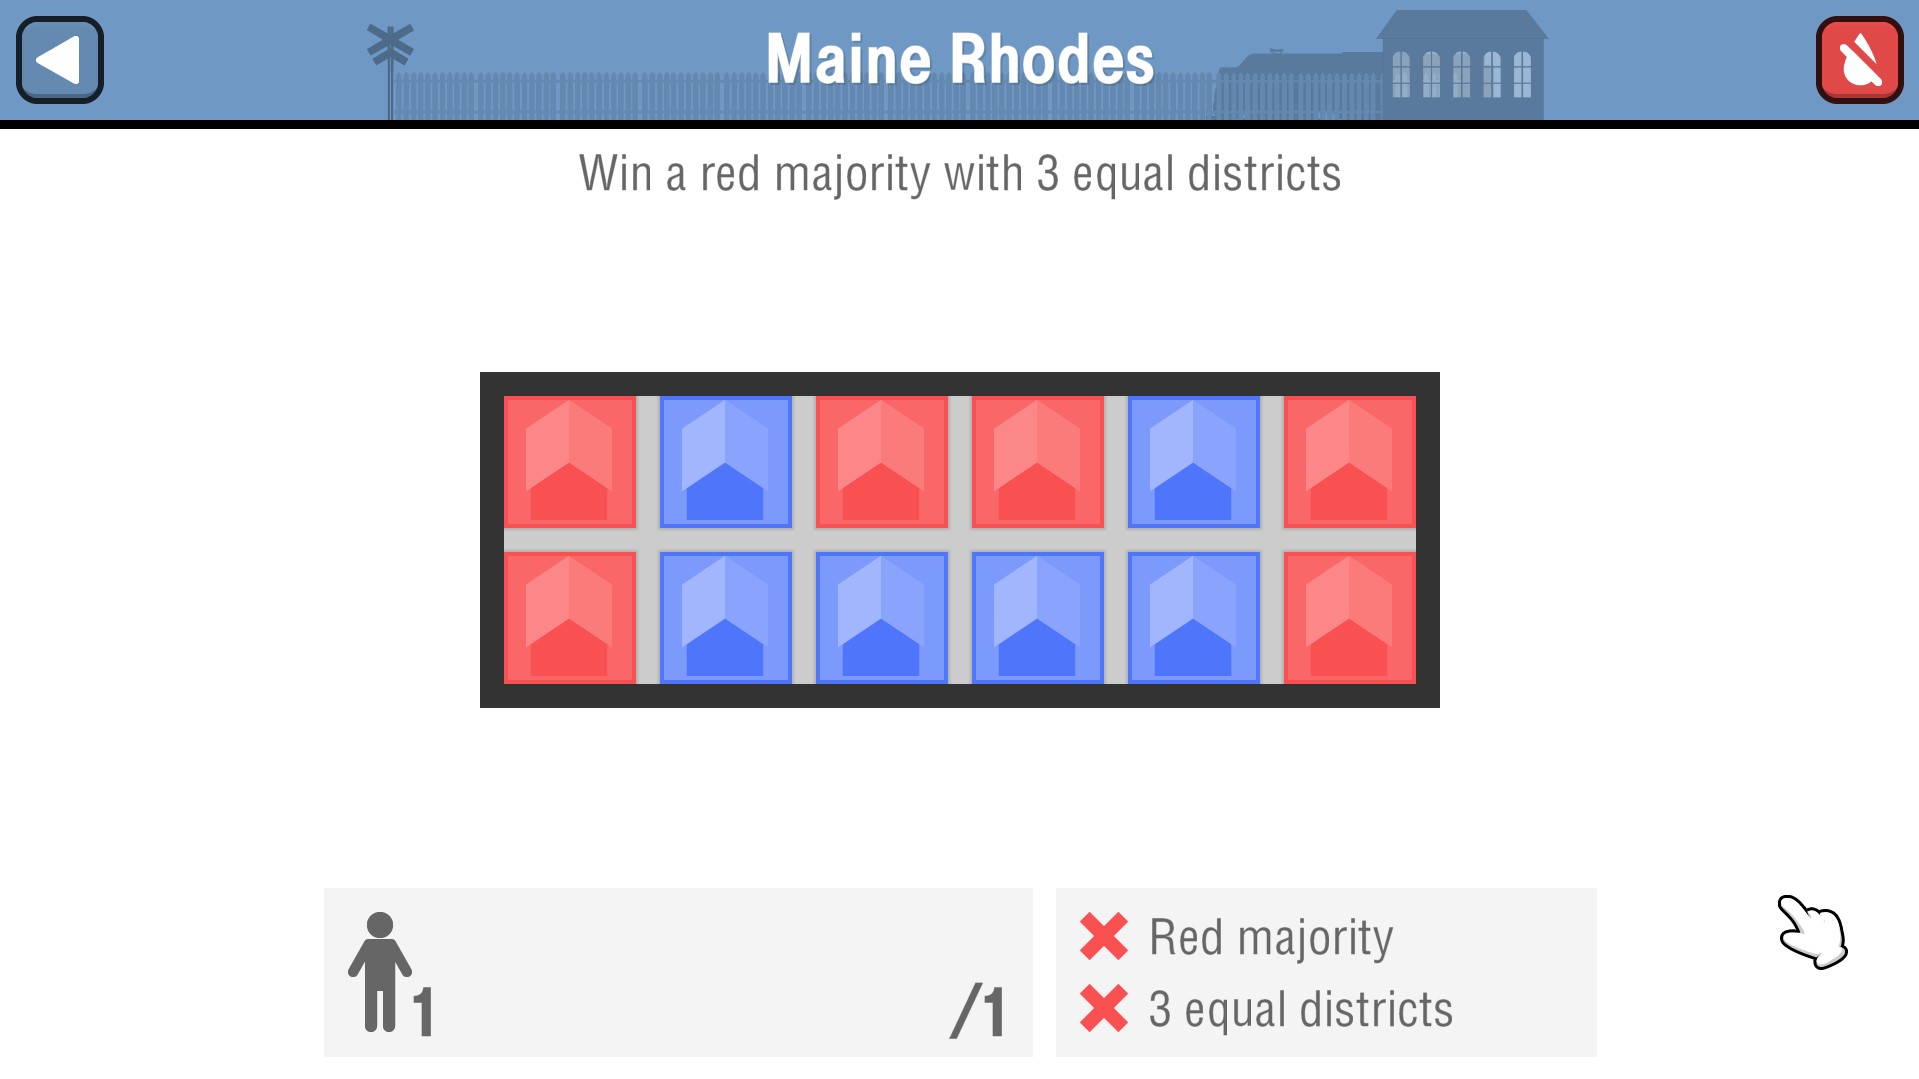 Maine Rhodes